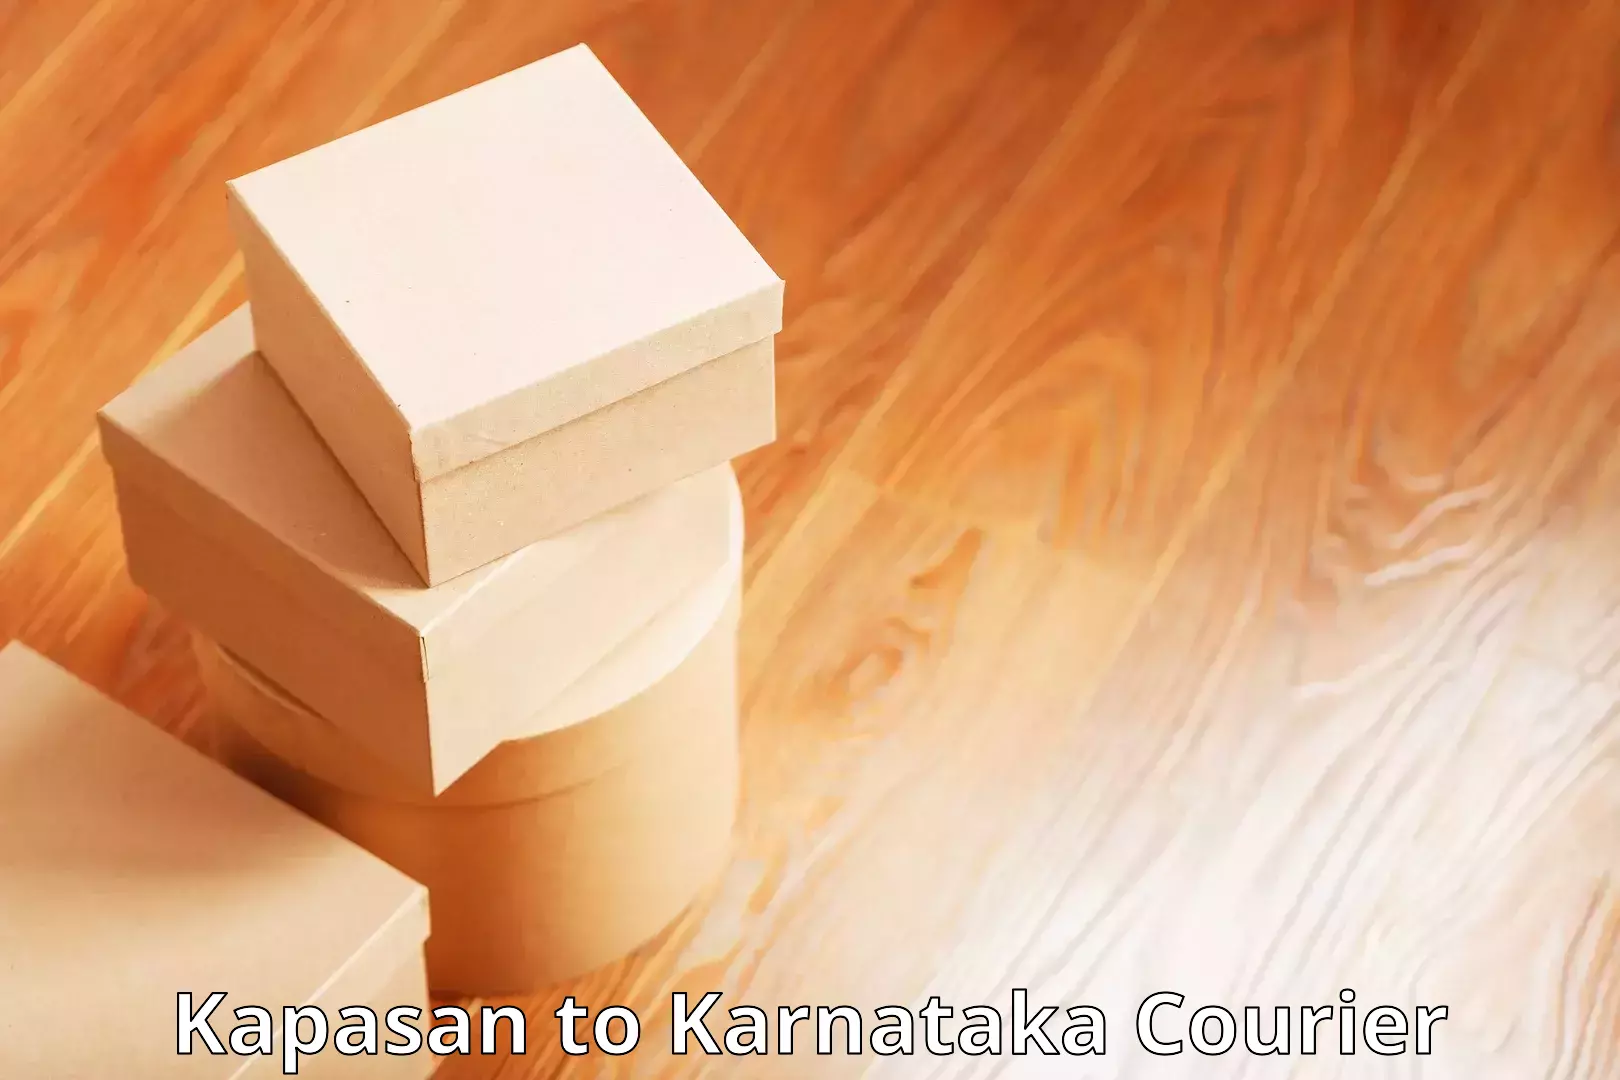 Bulk order courier Kapasan to Karnataka